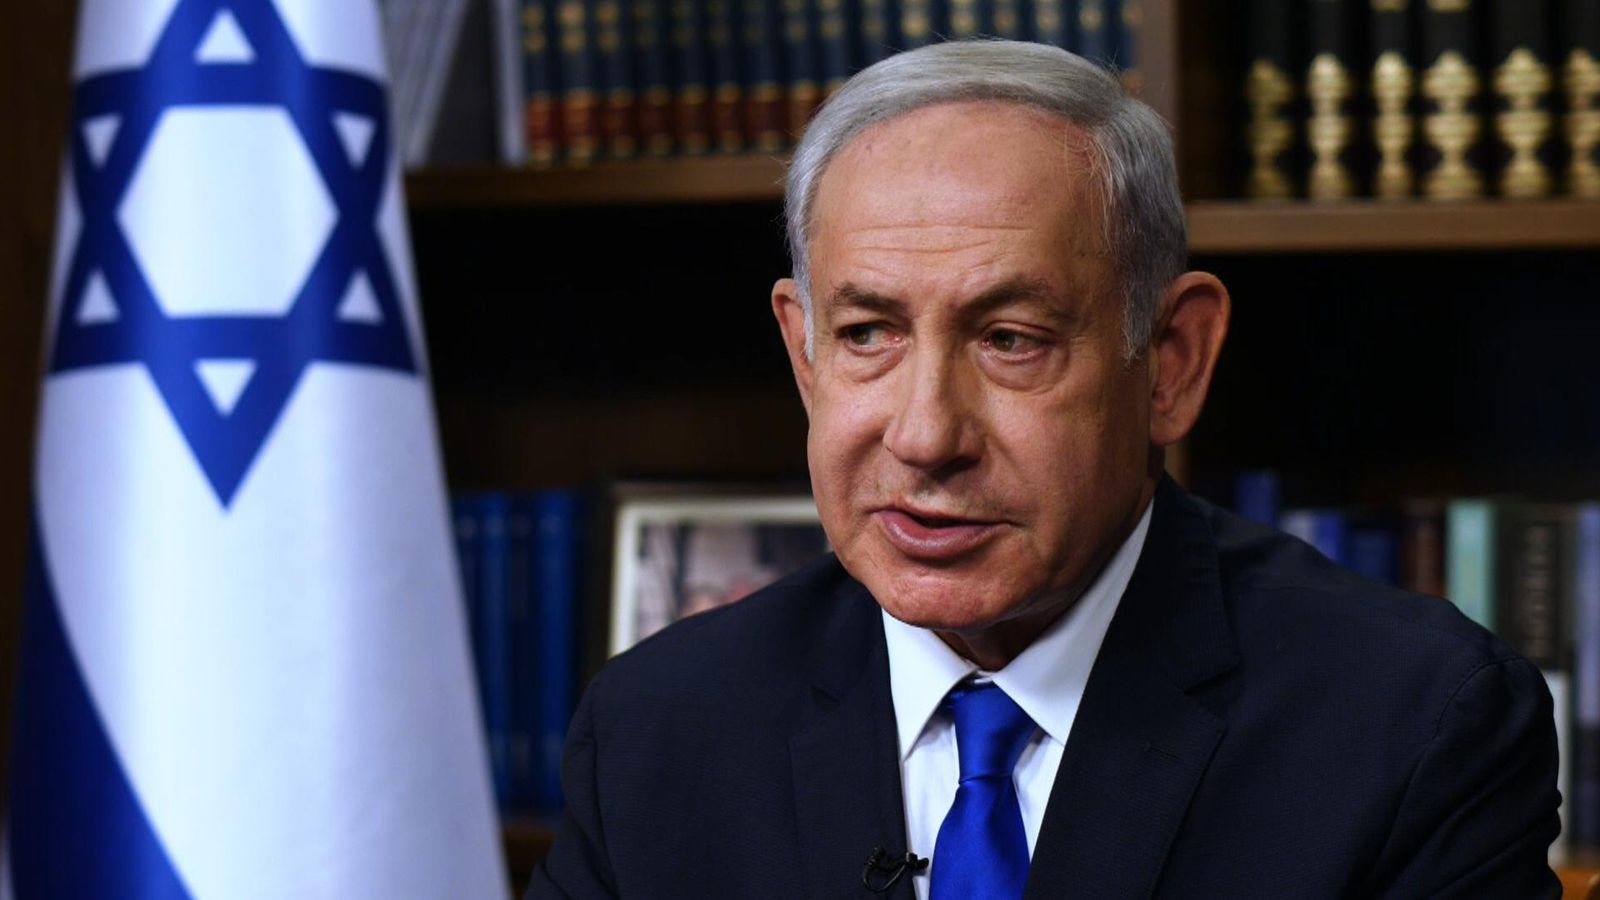 Israeli Prime Minister Benjamin Netanyahu taken to hospital 'feeling unwell'